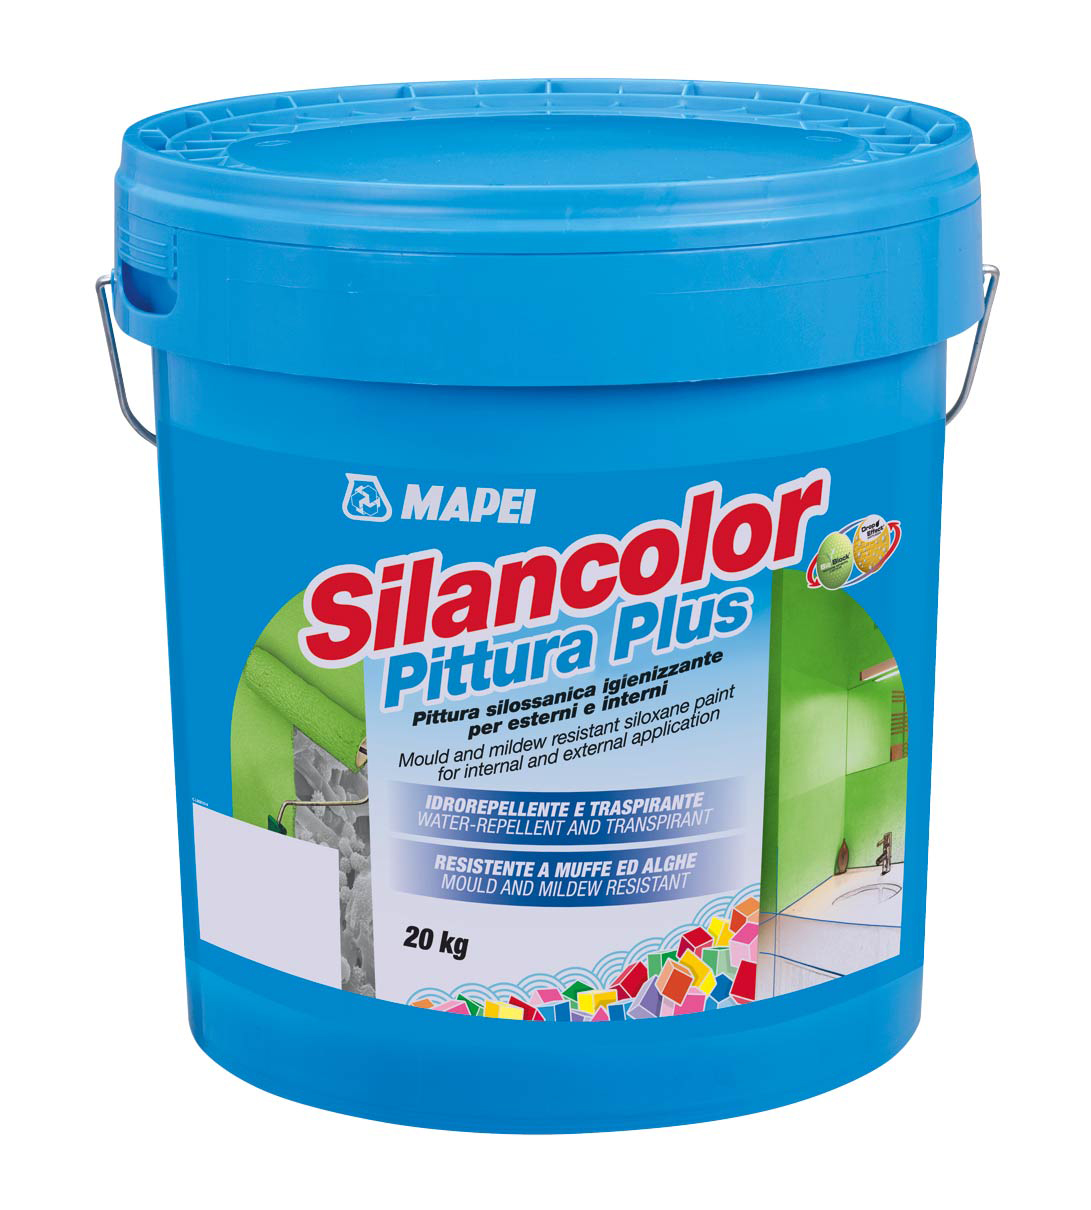 Silancolor® Pittura Plus Finálny náter na báze silikónovej živice vo vodnom roztoku je určený na aplikáciu v interiéri a exteriéri. Je odolný proti rastu plesní a rias, priepustný pre vodné pary, vodoodolný.